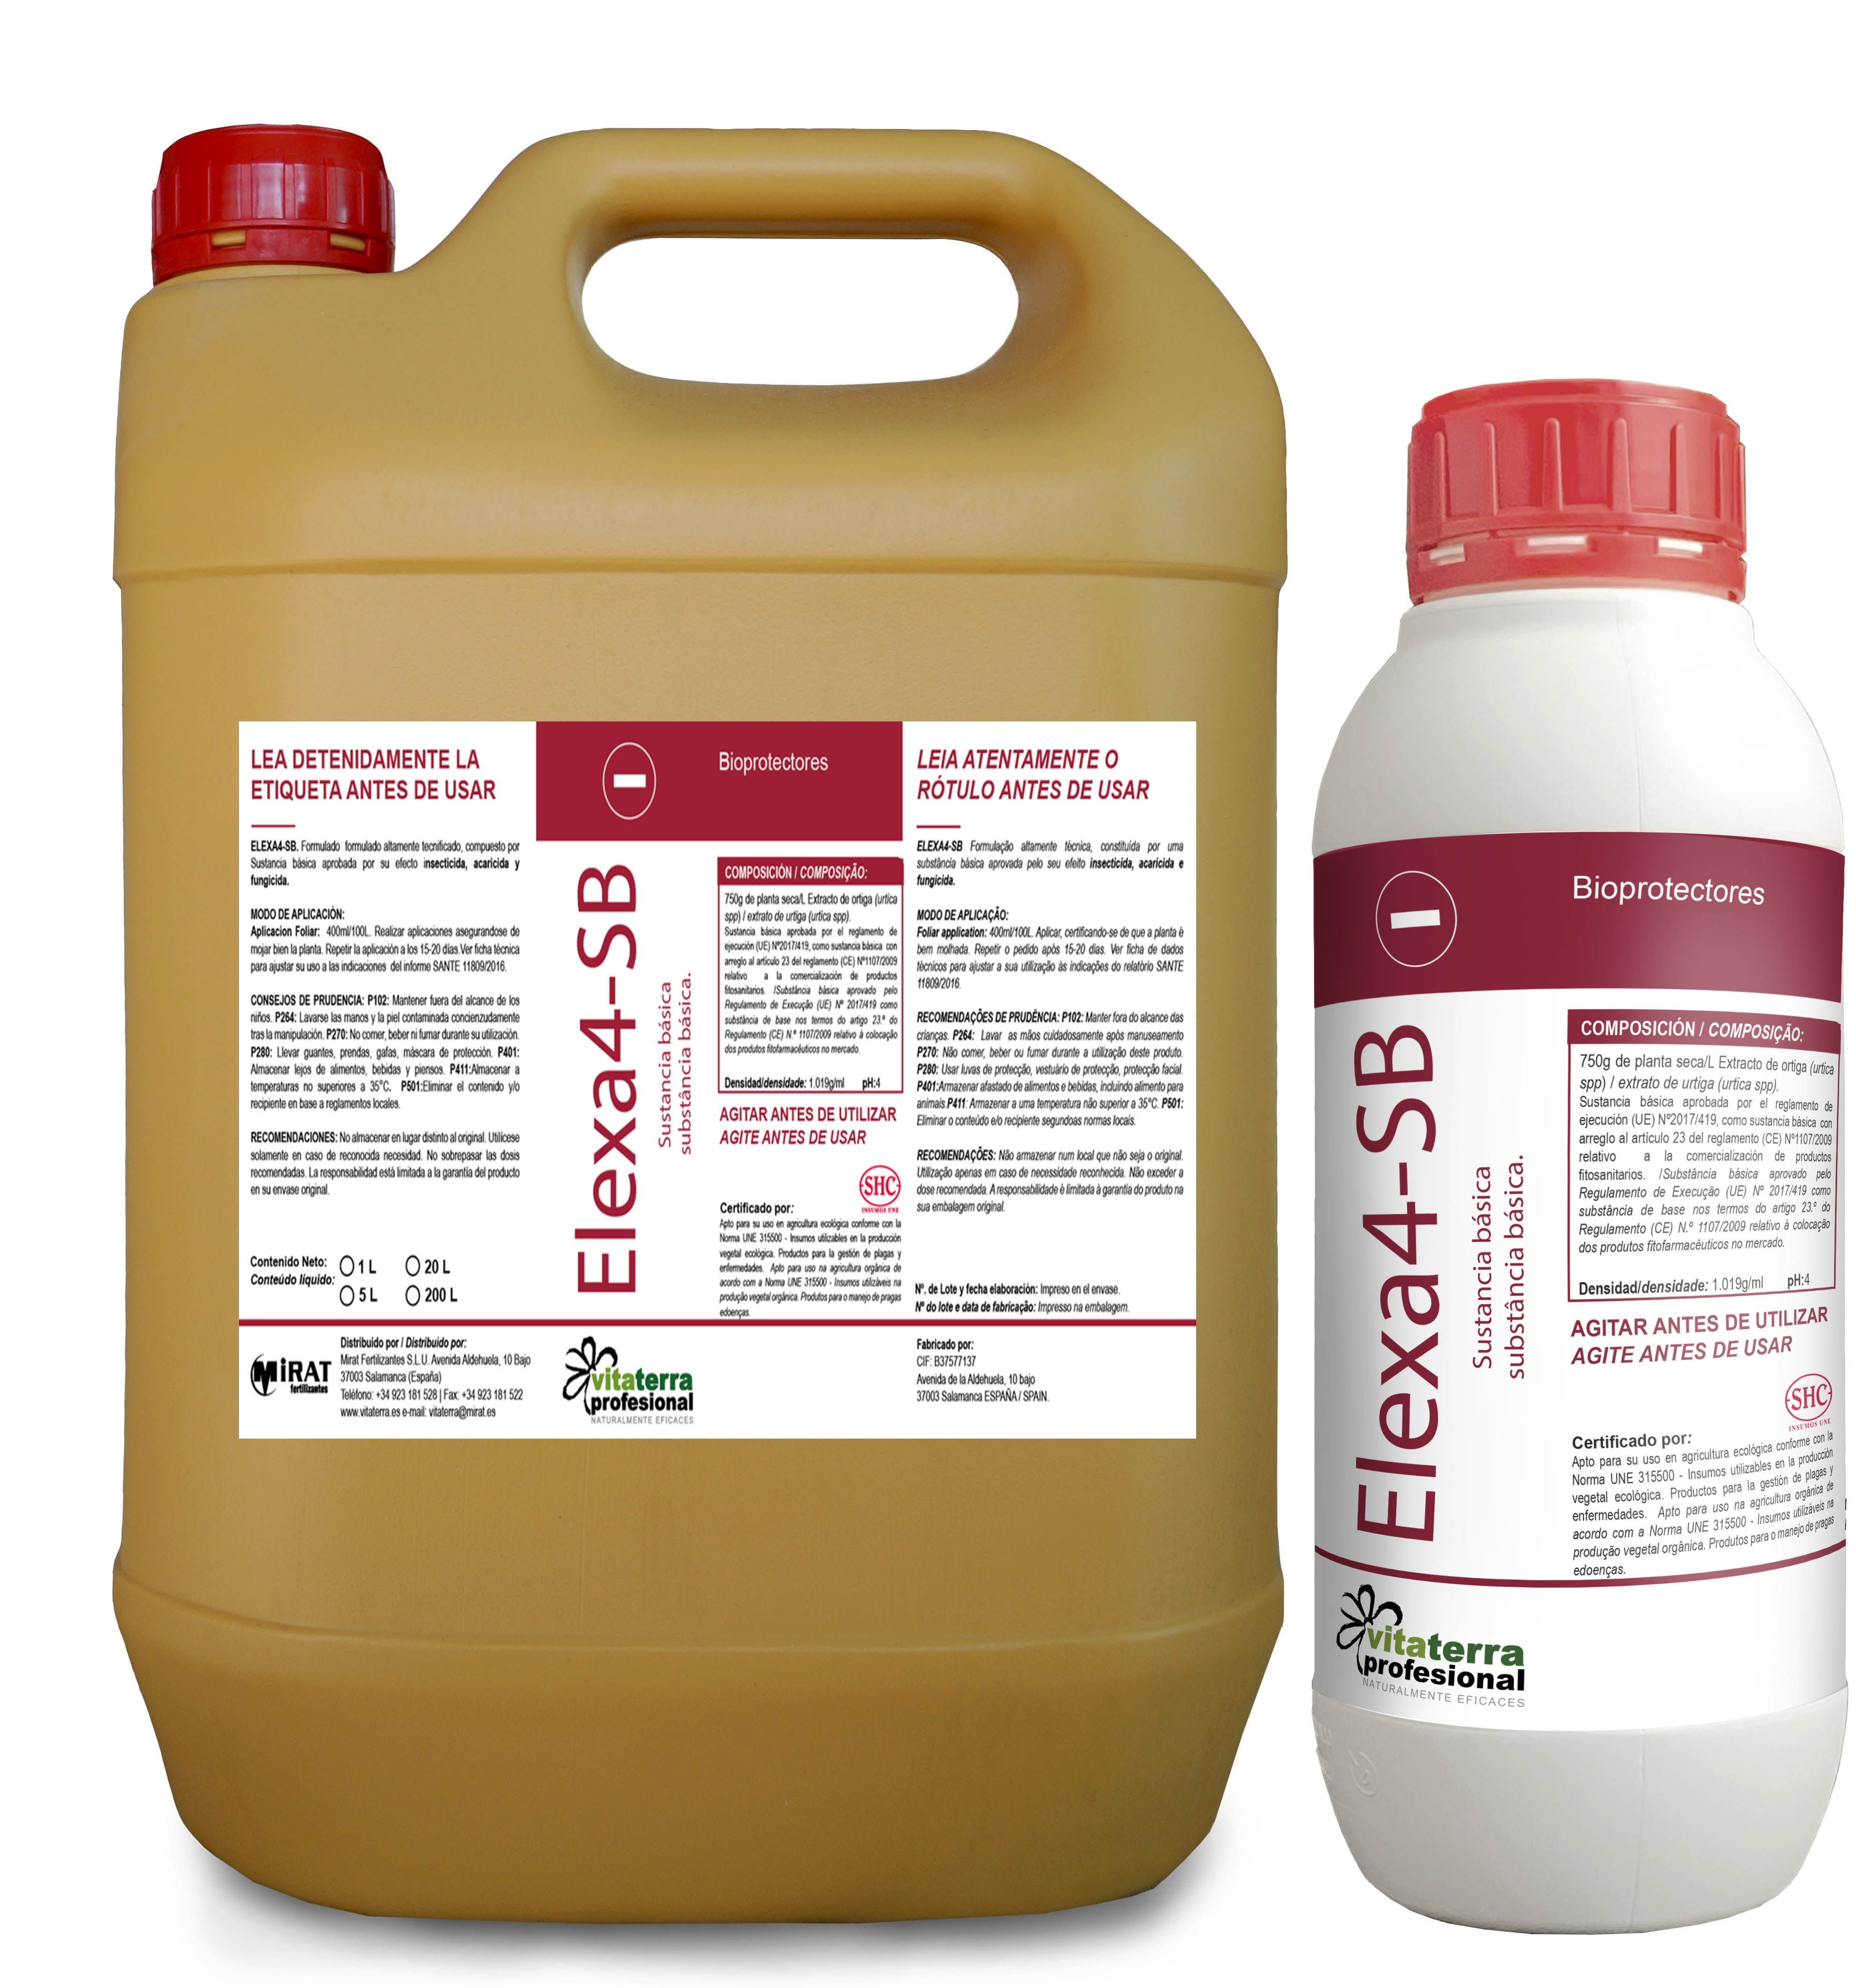 Elexa4-sb - Sustancia básica Insecticida